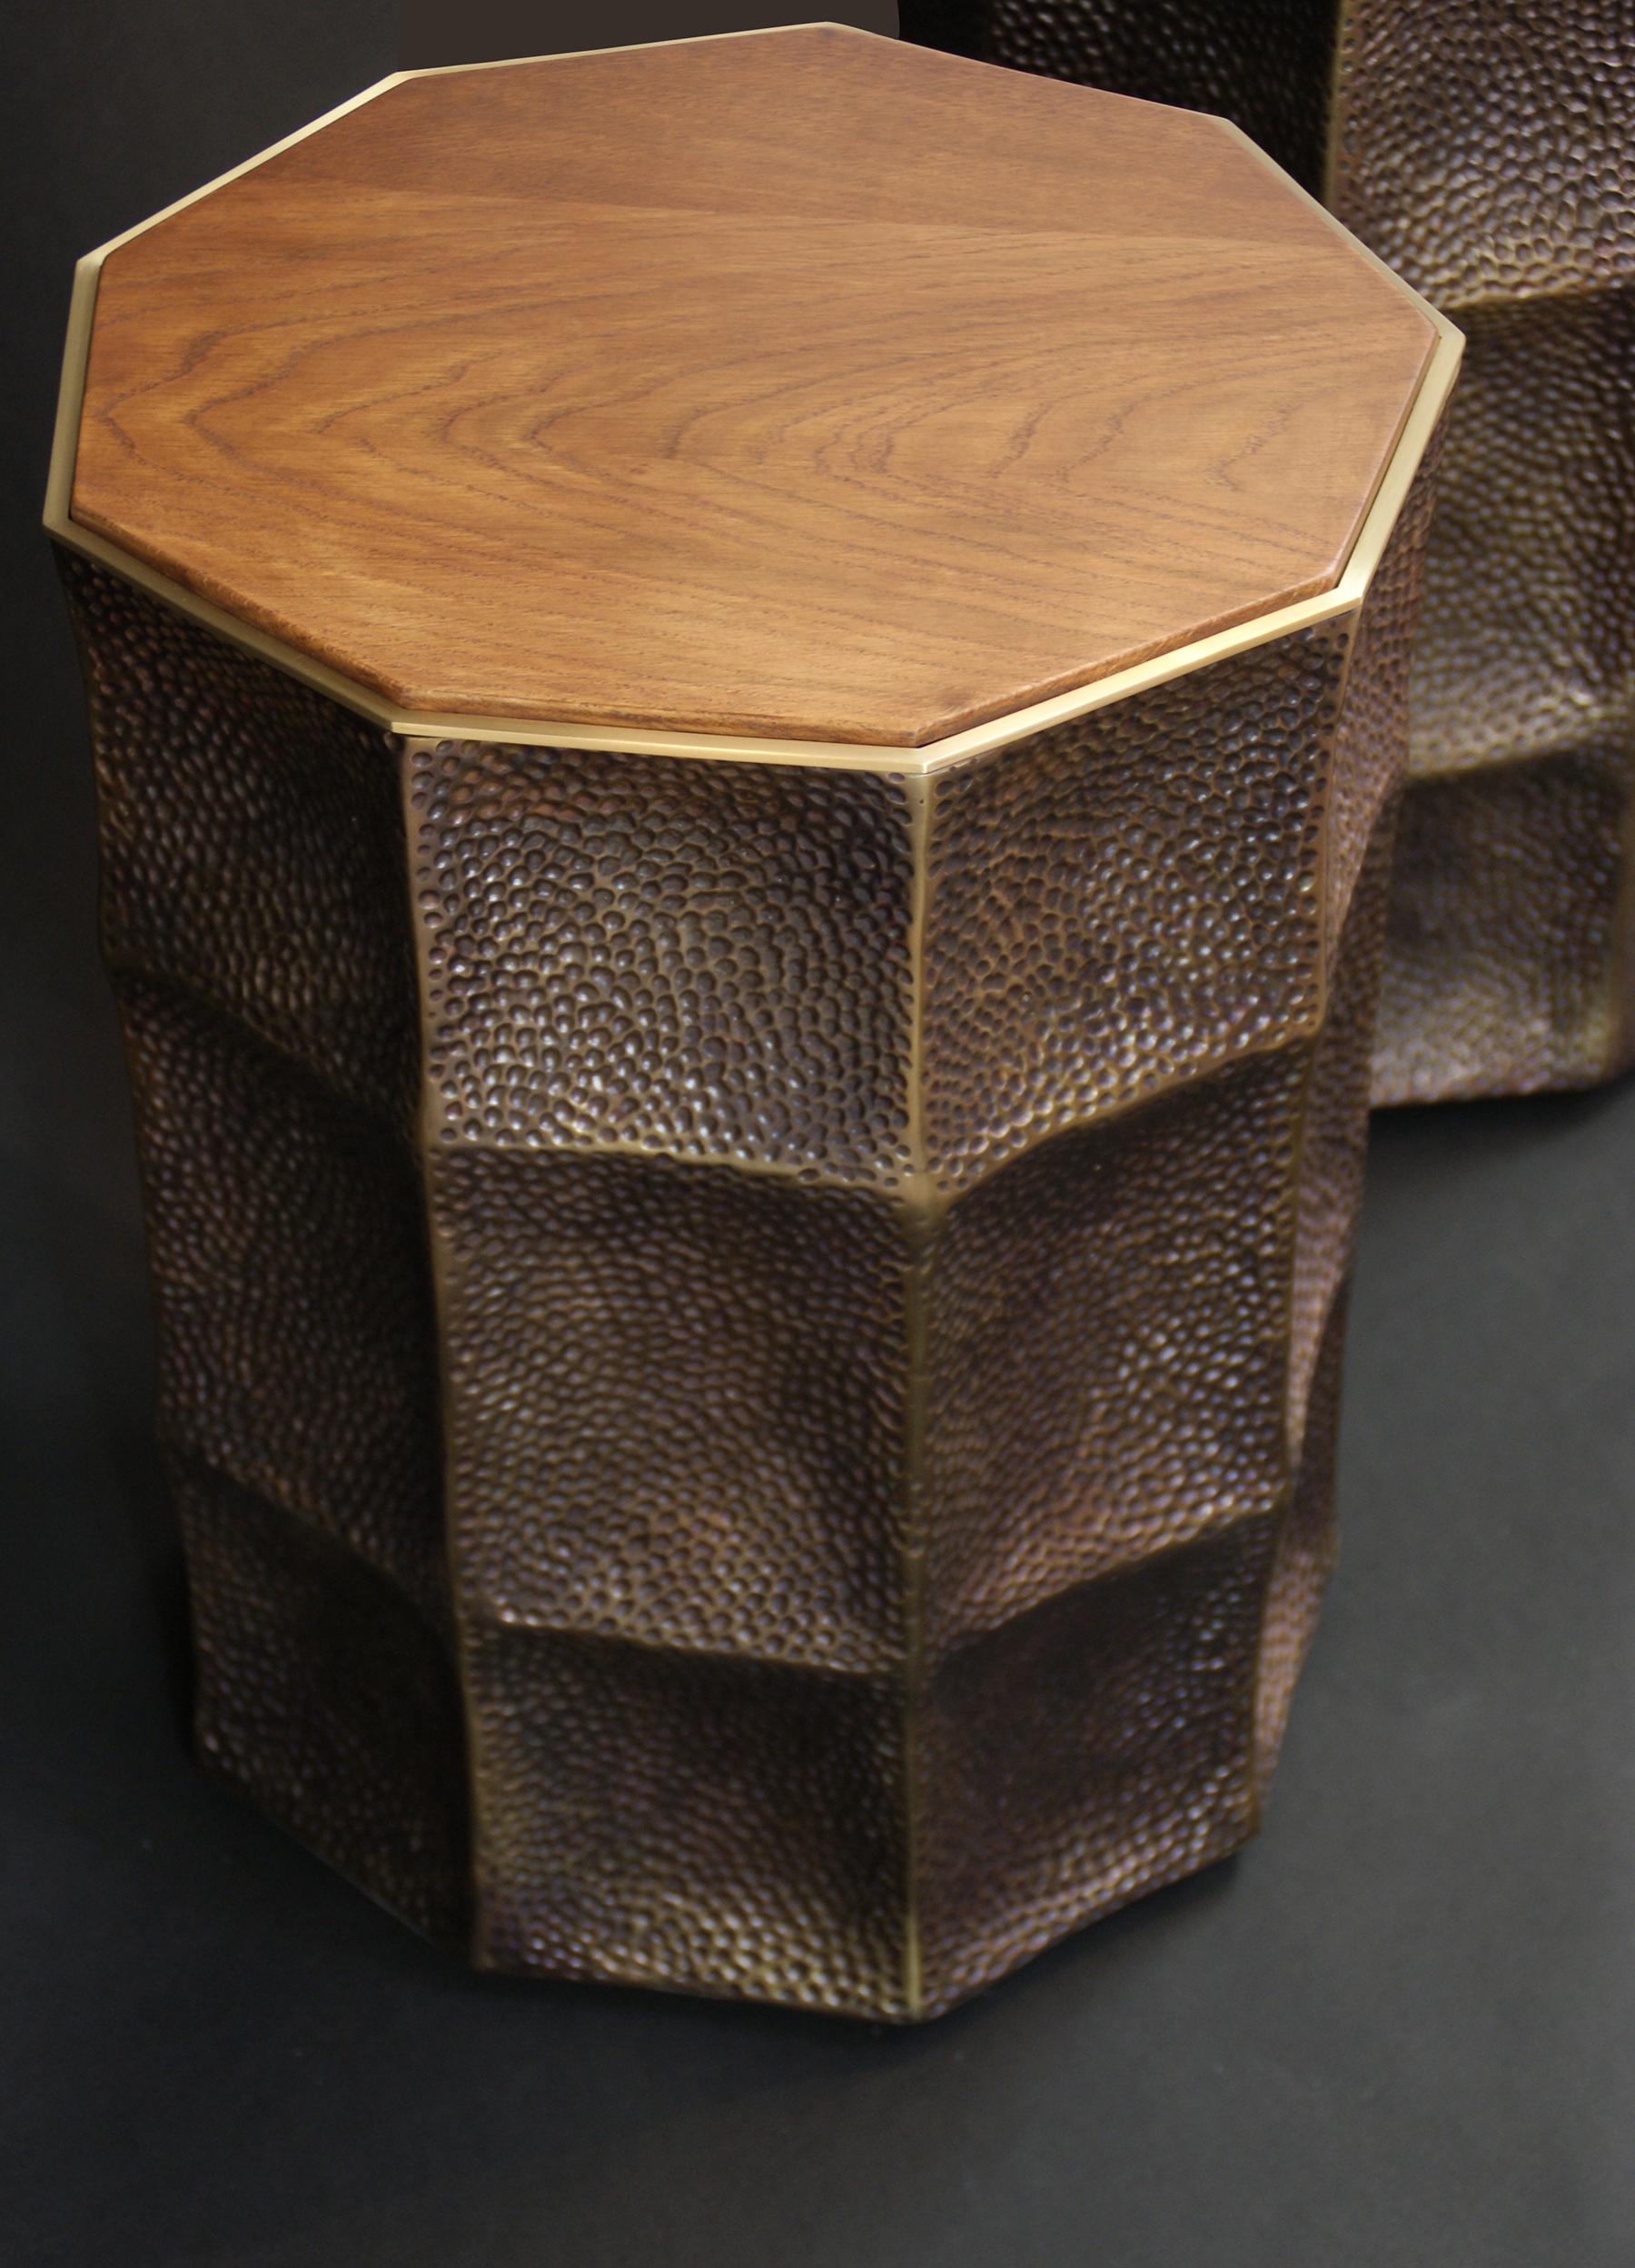 Belle table basse moderne, ou tabouret en bronze patiné et laiton, la partie supérieure peut être en bois ou en cuir marron, choix possible.
Édition limitée à 10 exemplaires numérotés et signés.
Cette étonnante table basse de qualité supérieure a